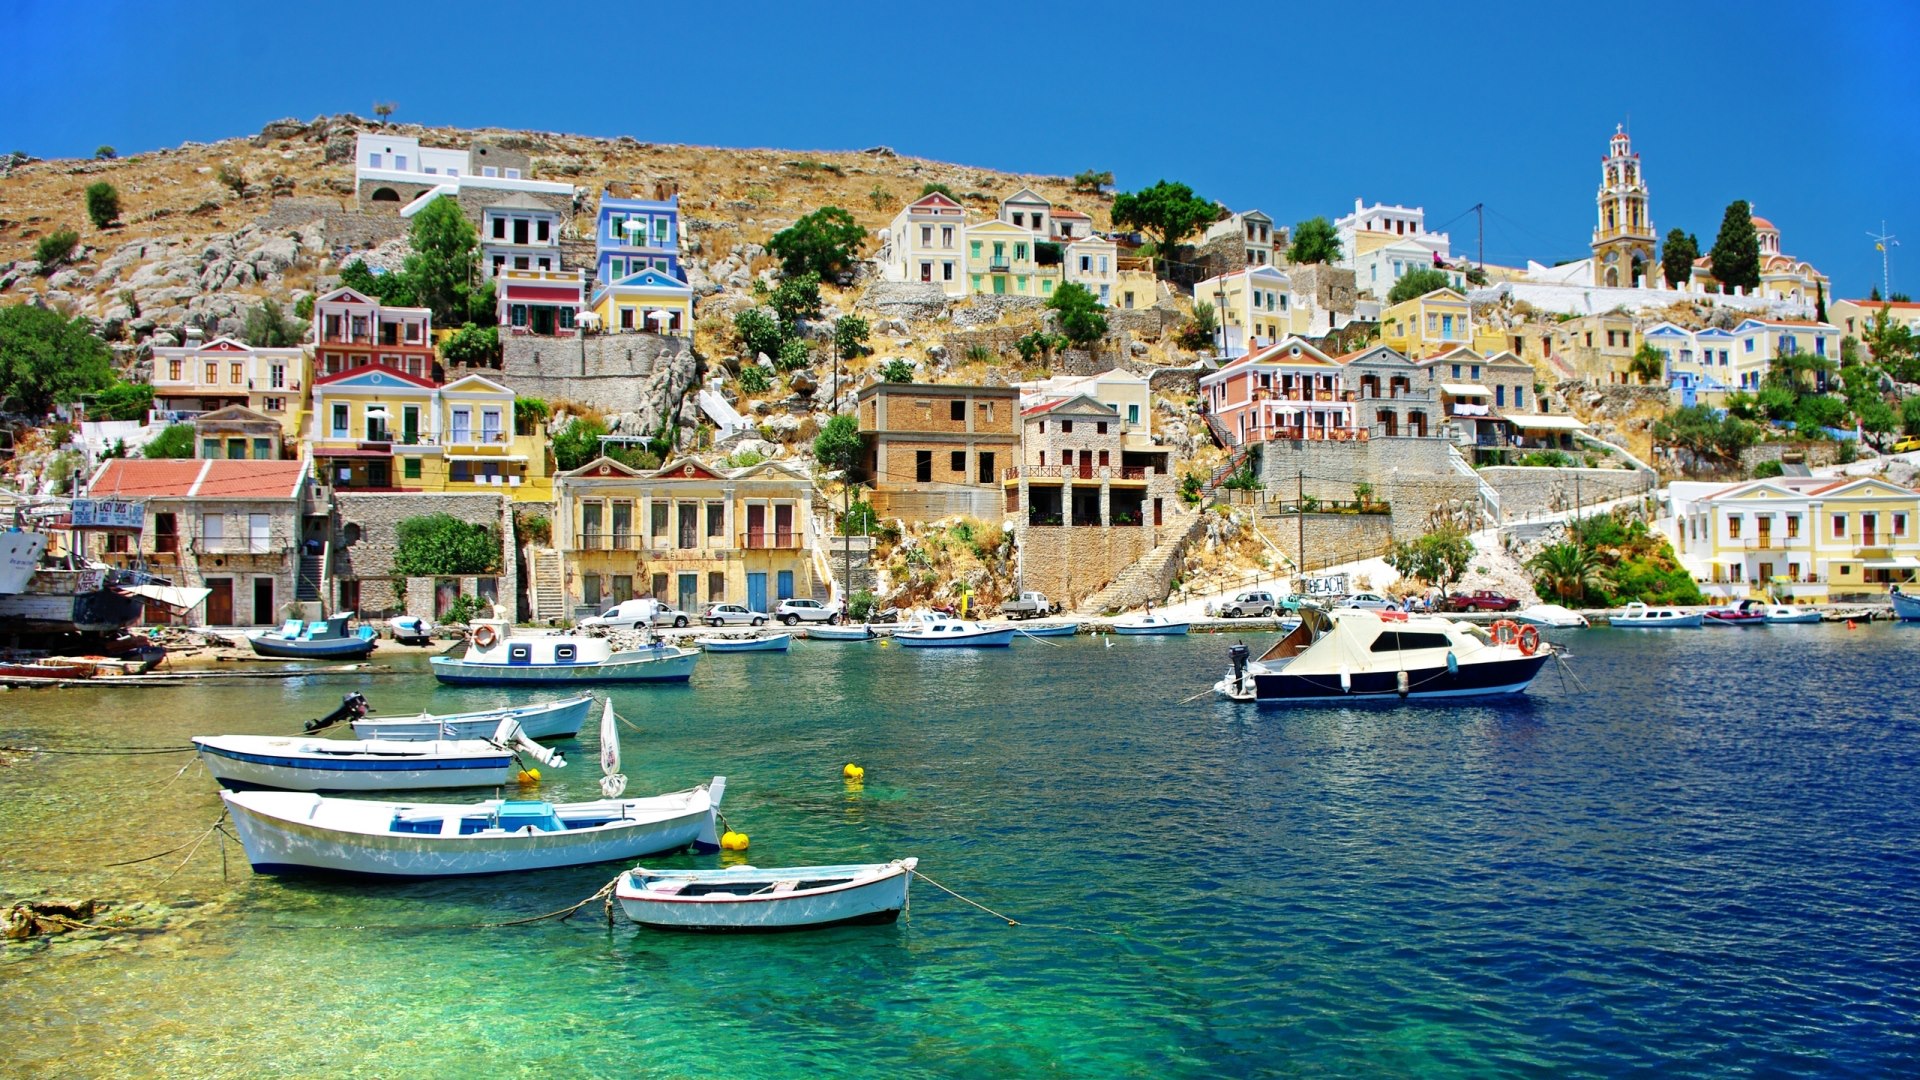 Οι 10 ελληνικοί προορισμοί που προτείνει η Guardian για διακοπές μετά την πανδημία